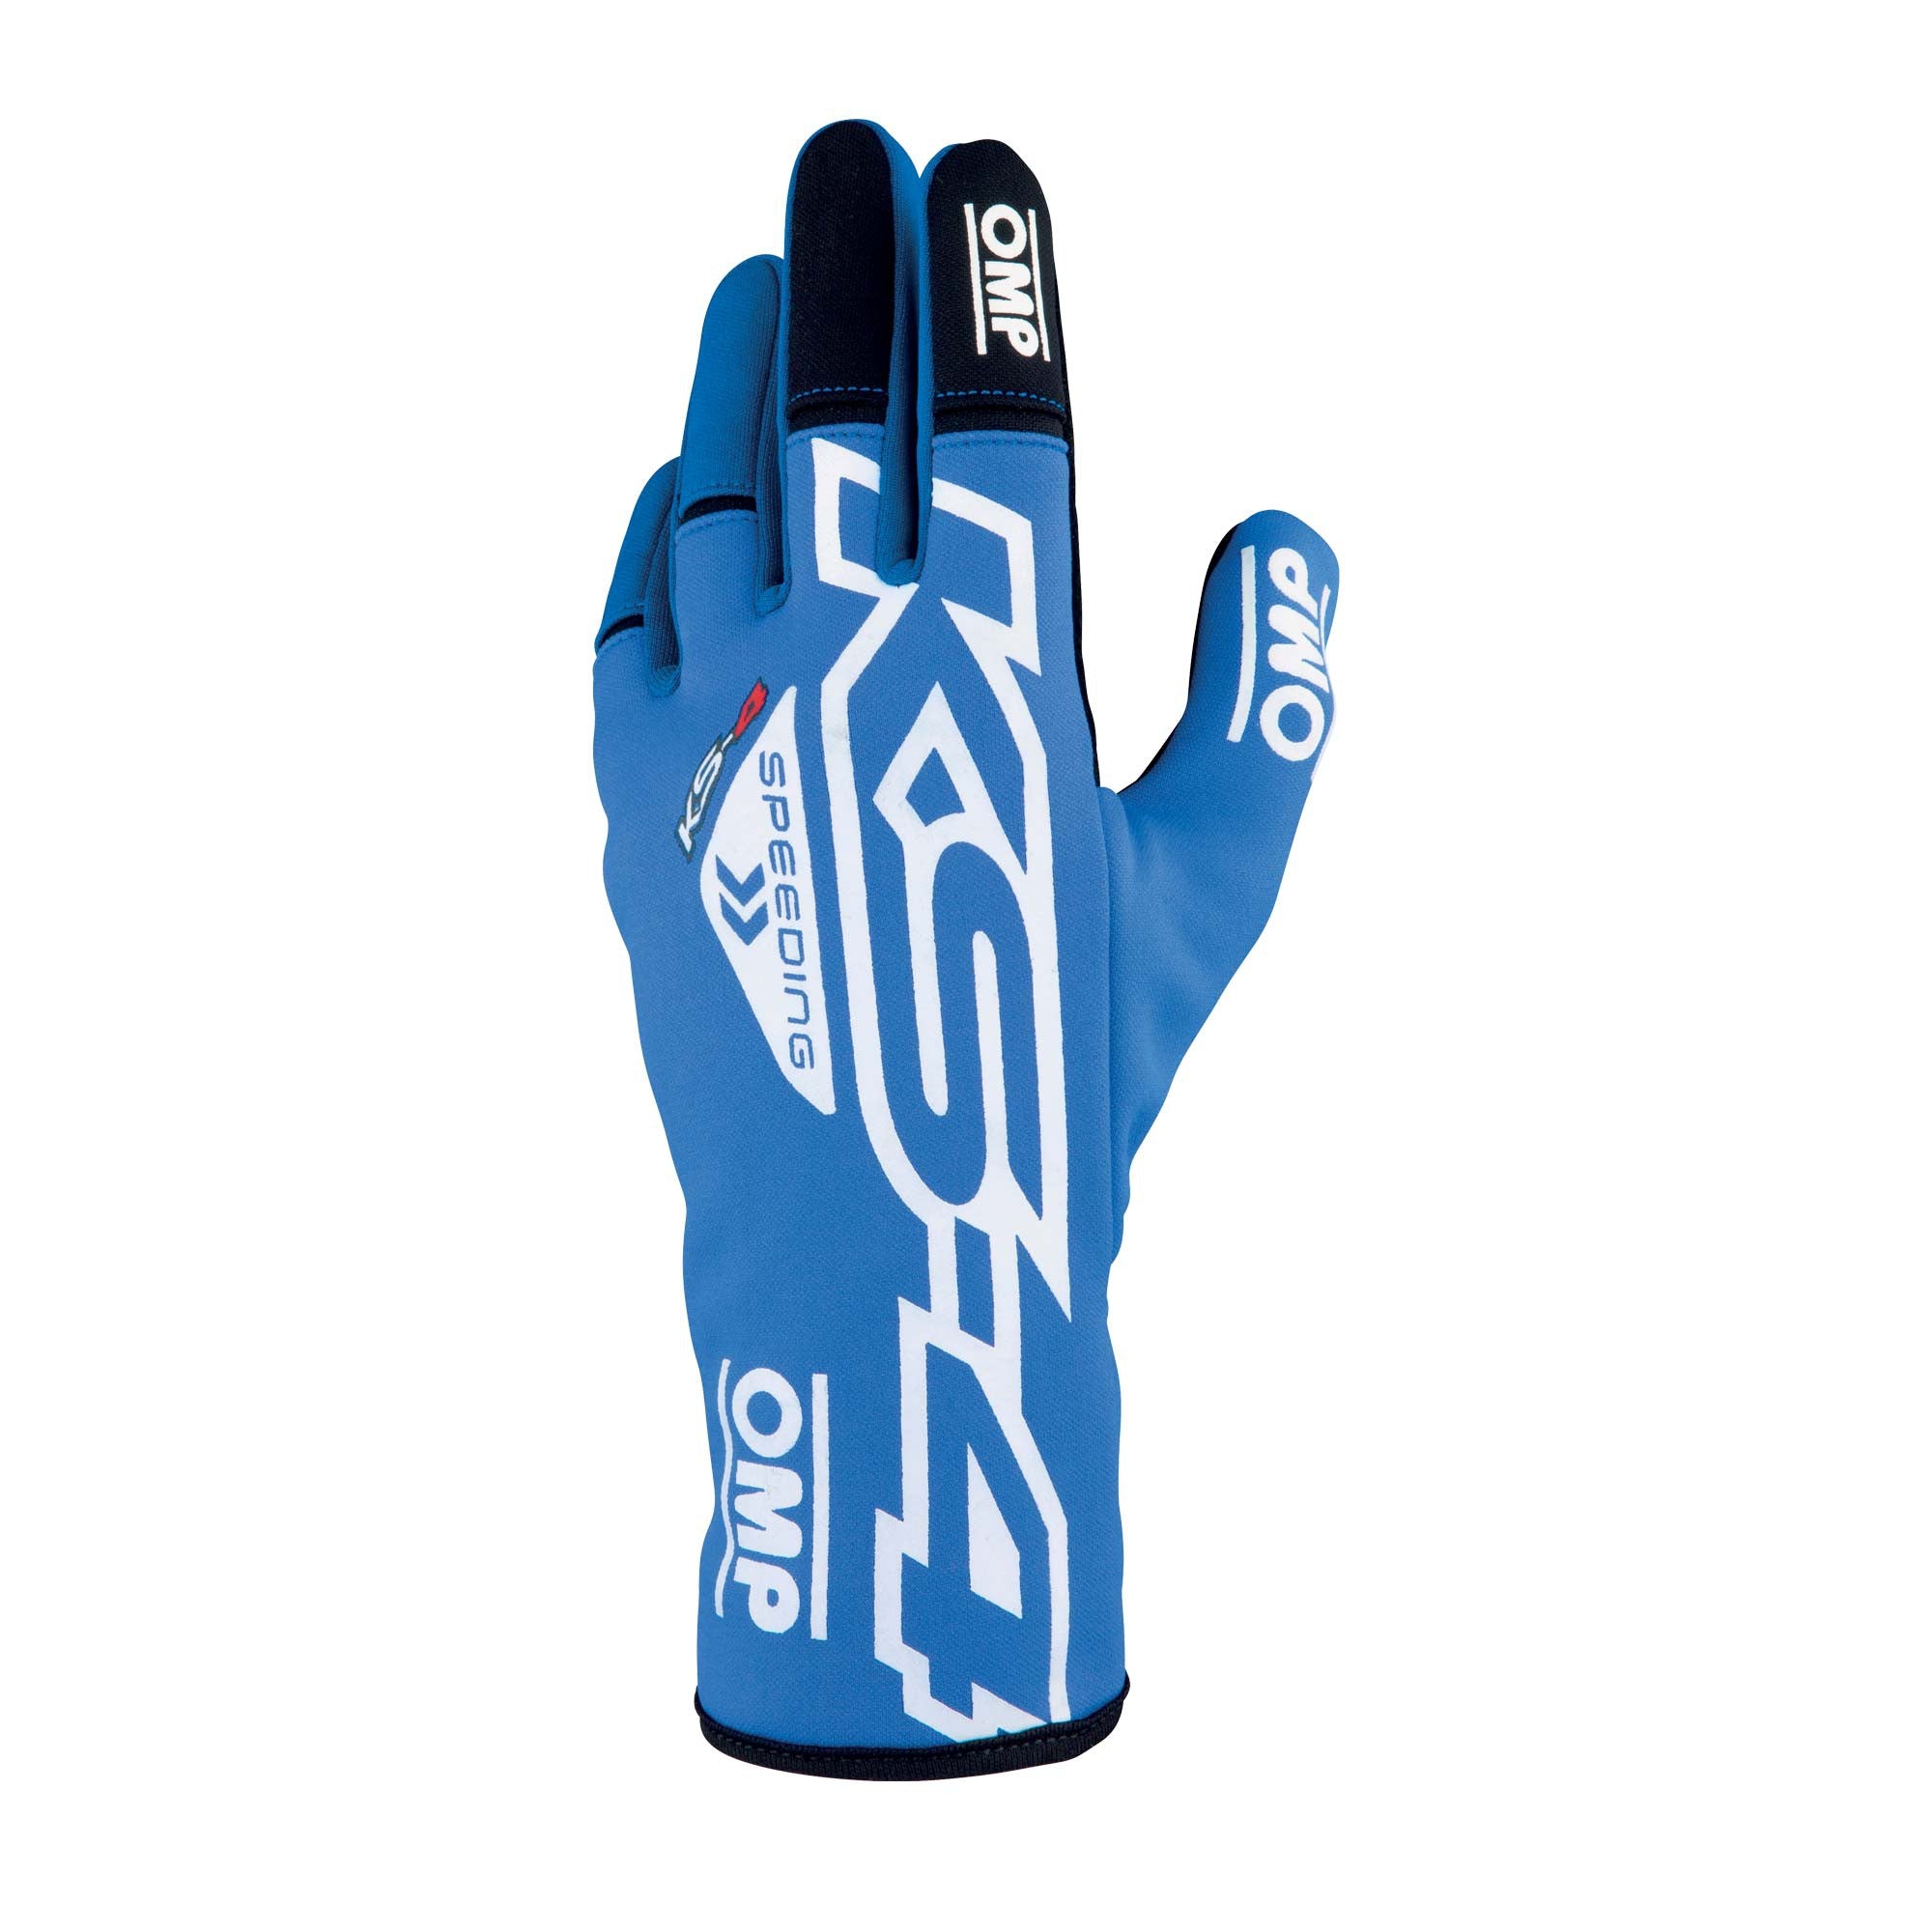 OMP KB0-2750-A01-043-S KS-4 Gloves my2023 Karting gloves, blue/white, size S Photo-0 